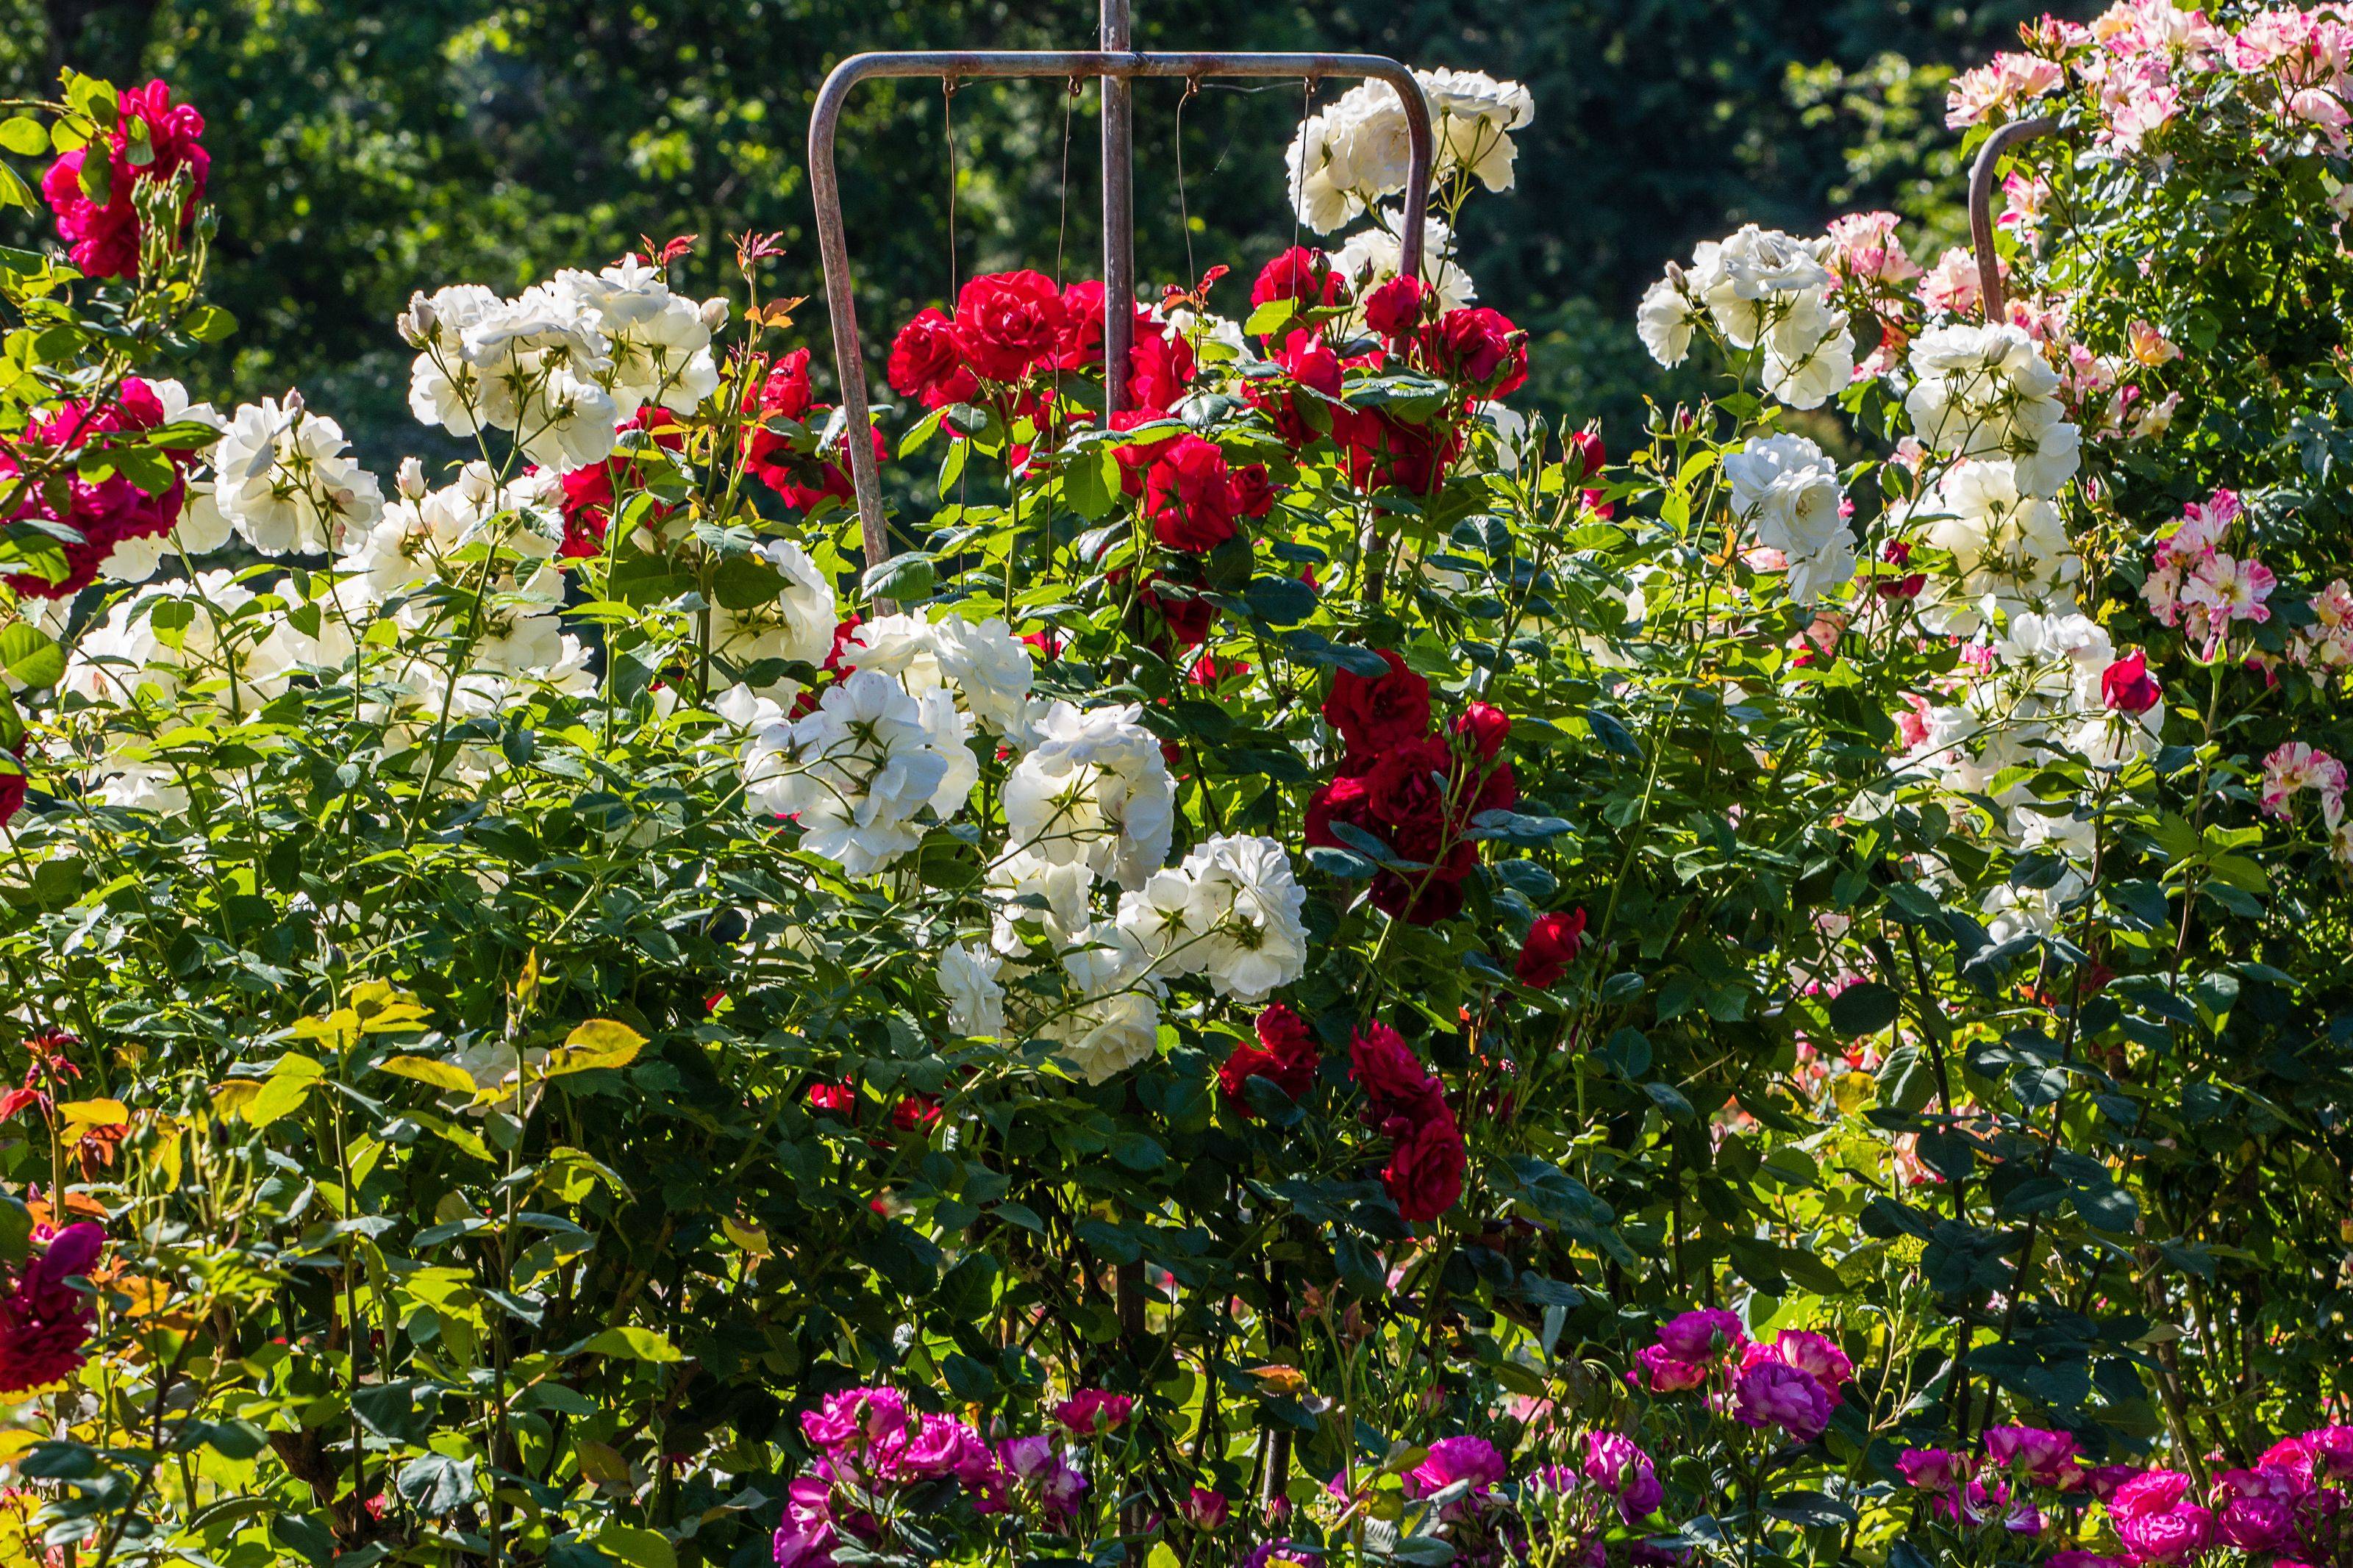 The Portland Rose Garden